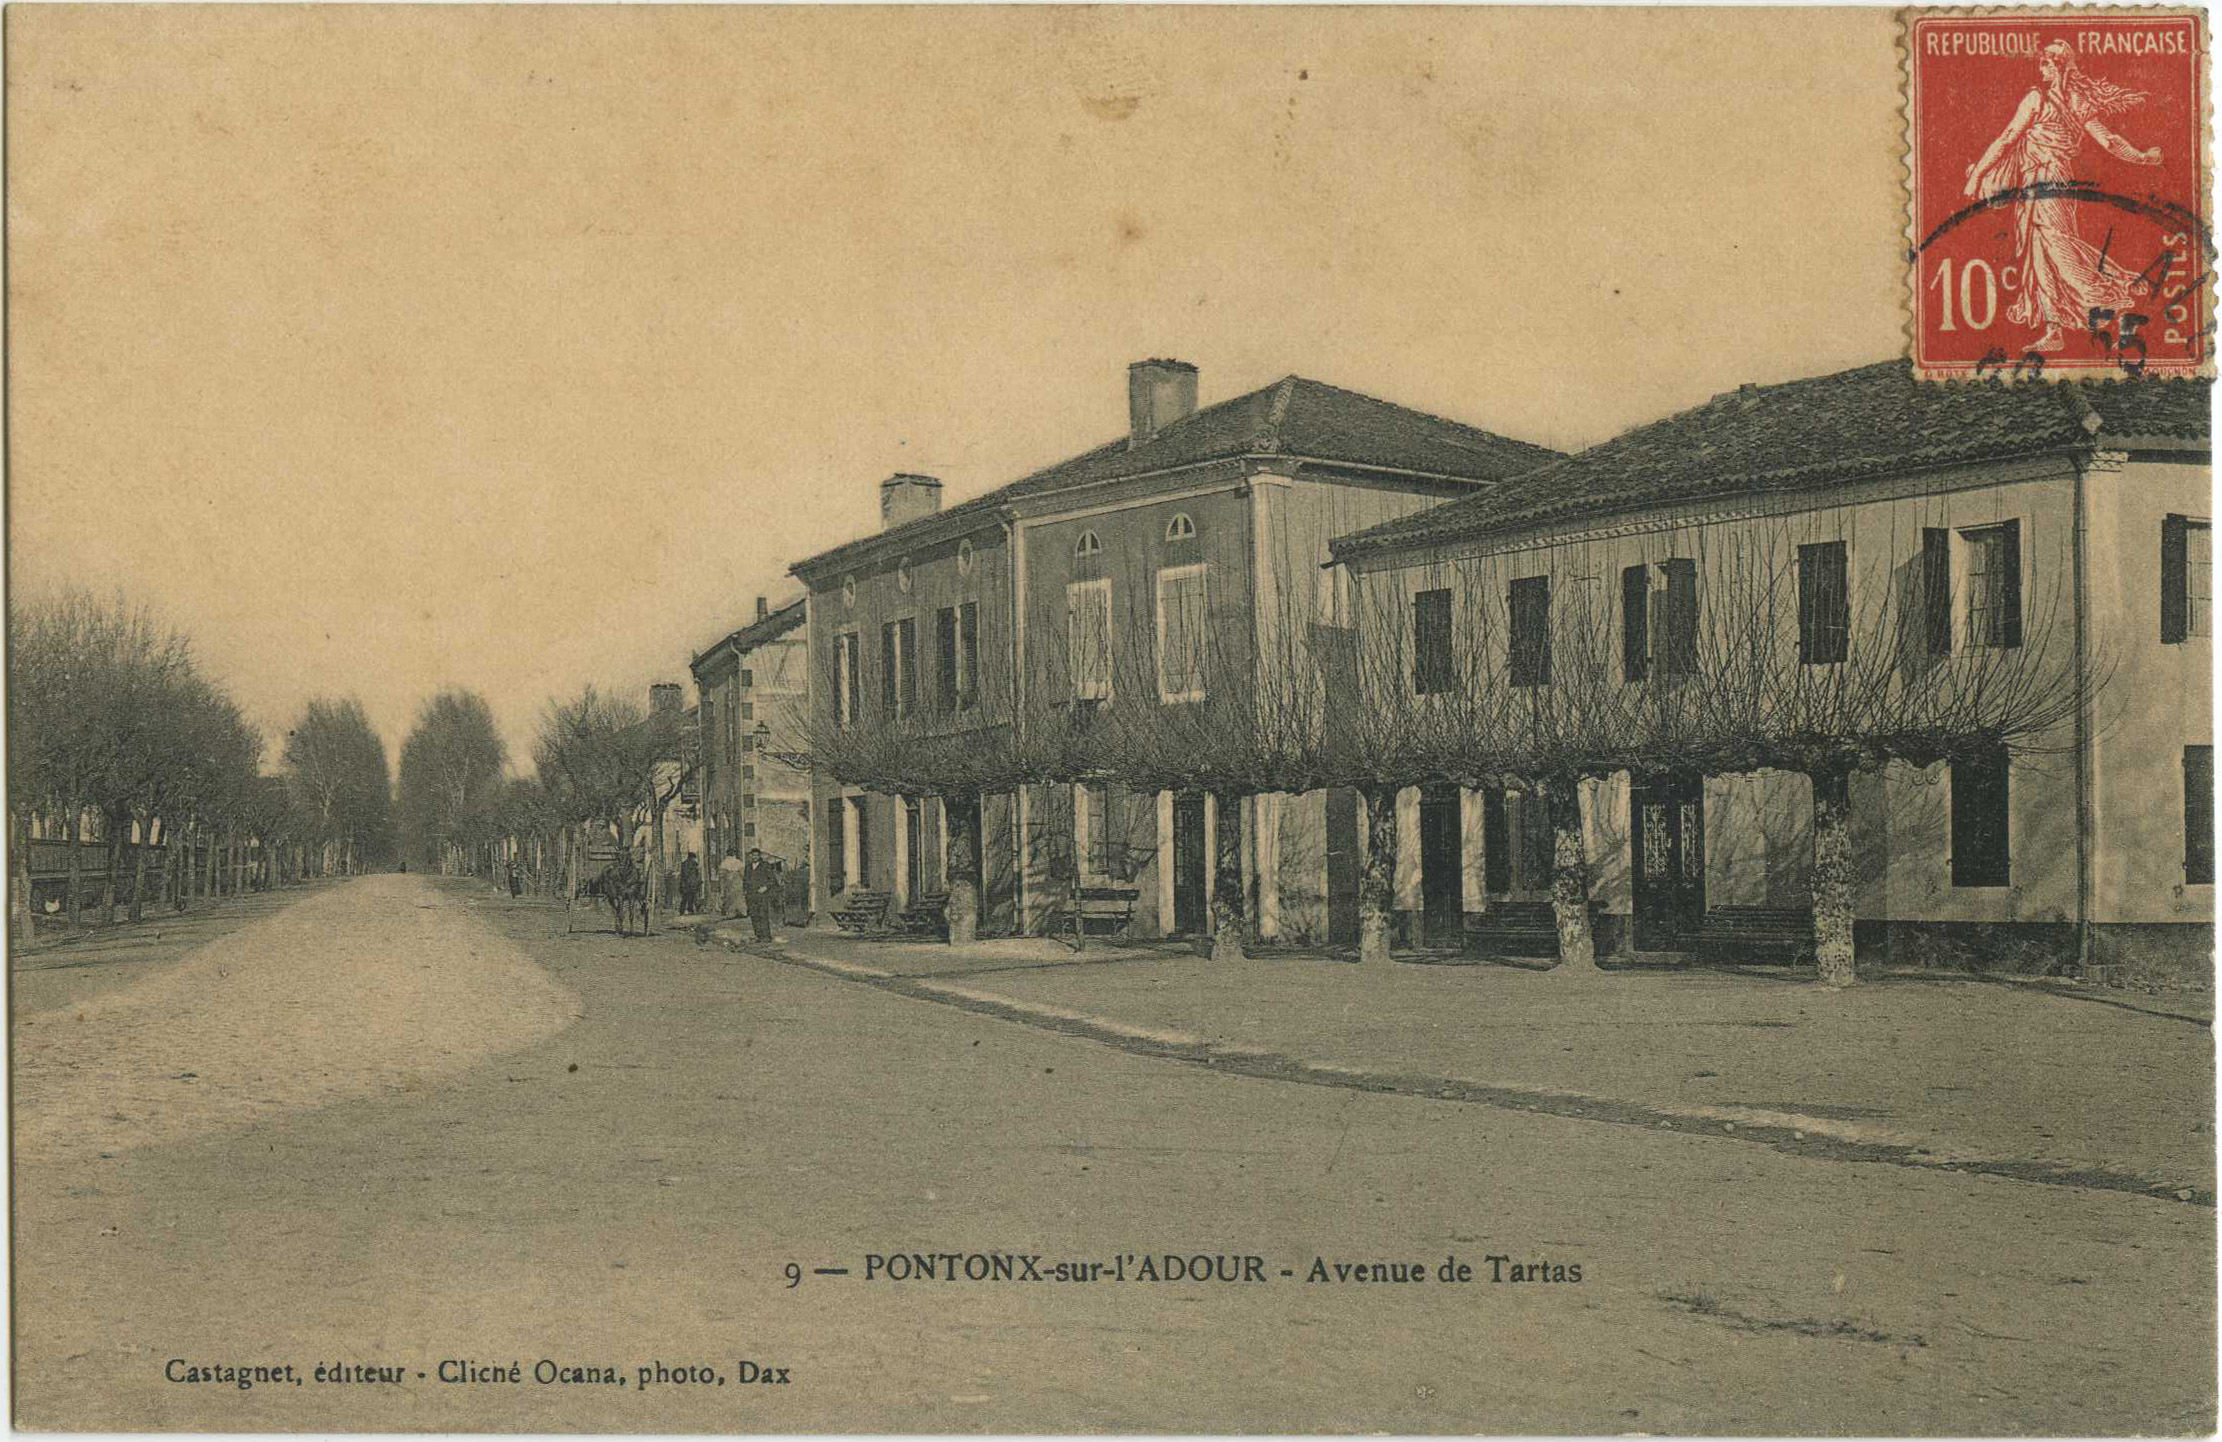 Pontonx-sur-l'Adour - Avenue de Tartas